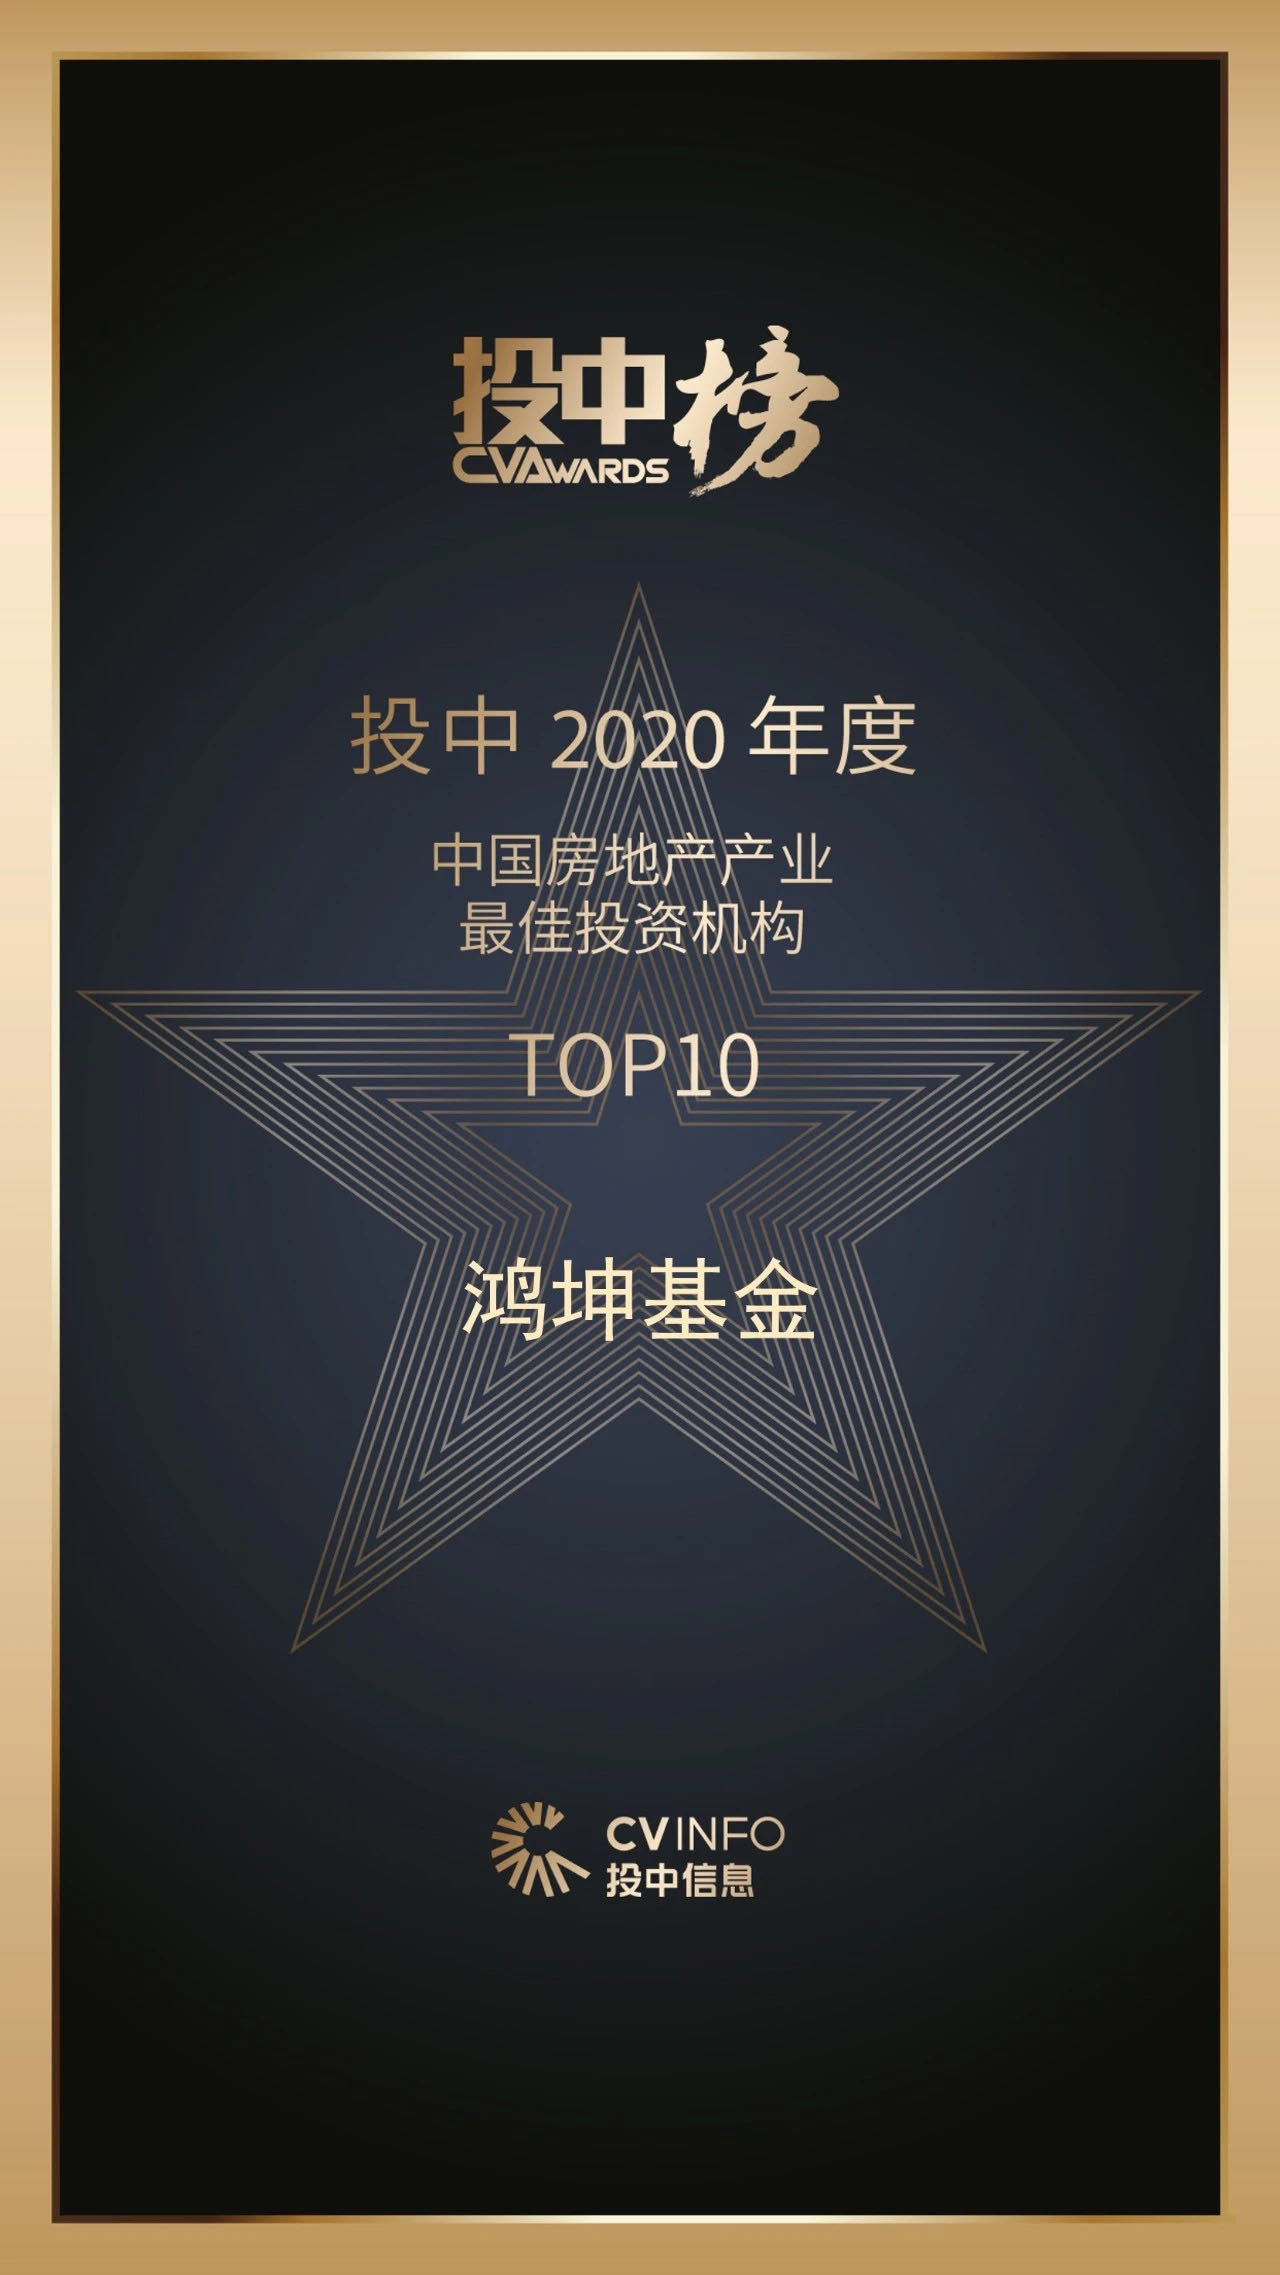 鸿坤基金获2020年度中国房地产产业最佳投资机构10强荣誉